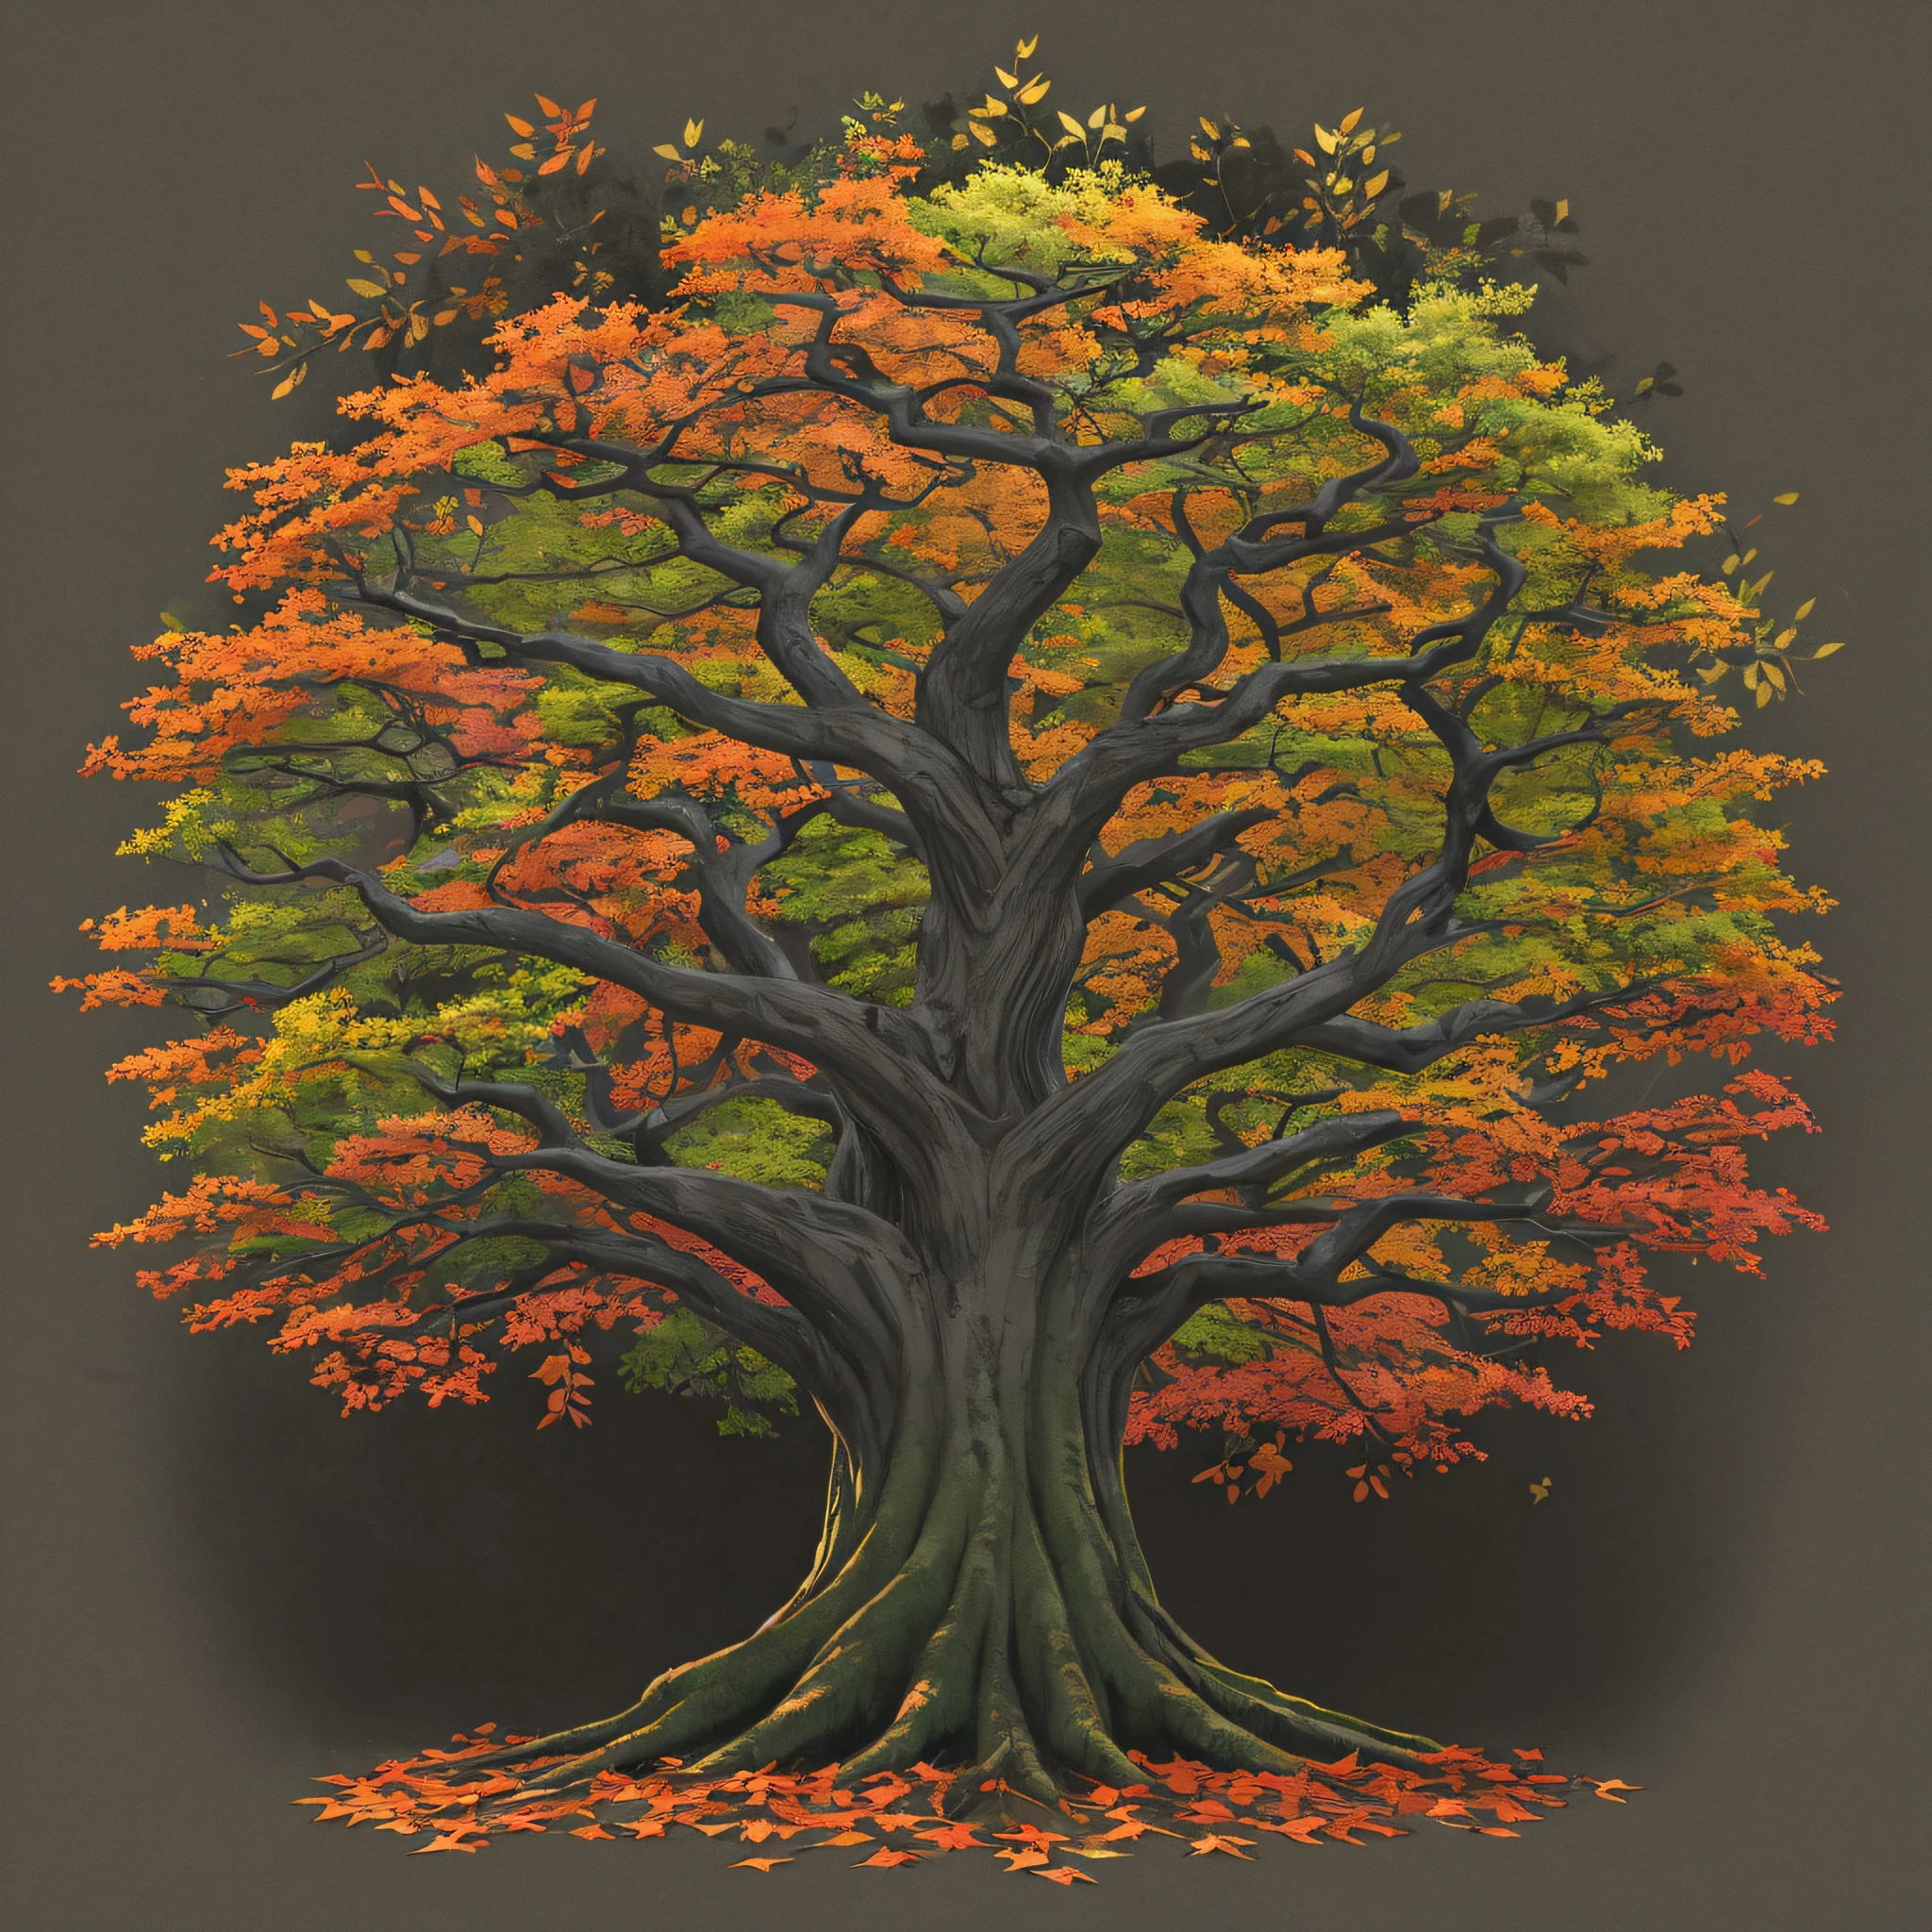 árbol de la vida, árbol frondoso, Tronco grueso, con hojas y flores coloridas, fondo oscuro, nocturnal, gris.